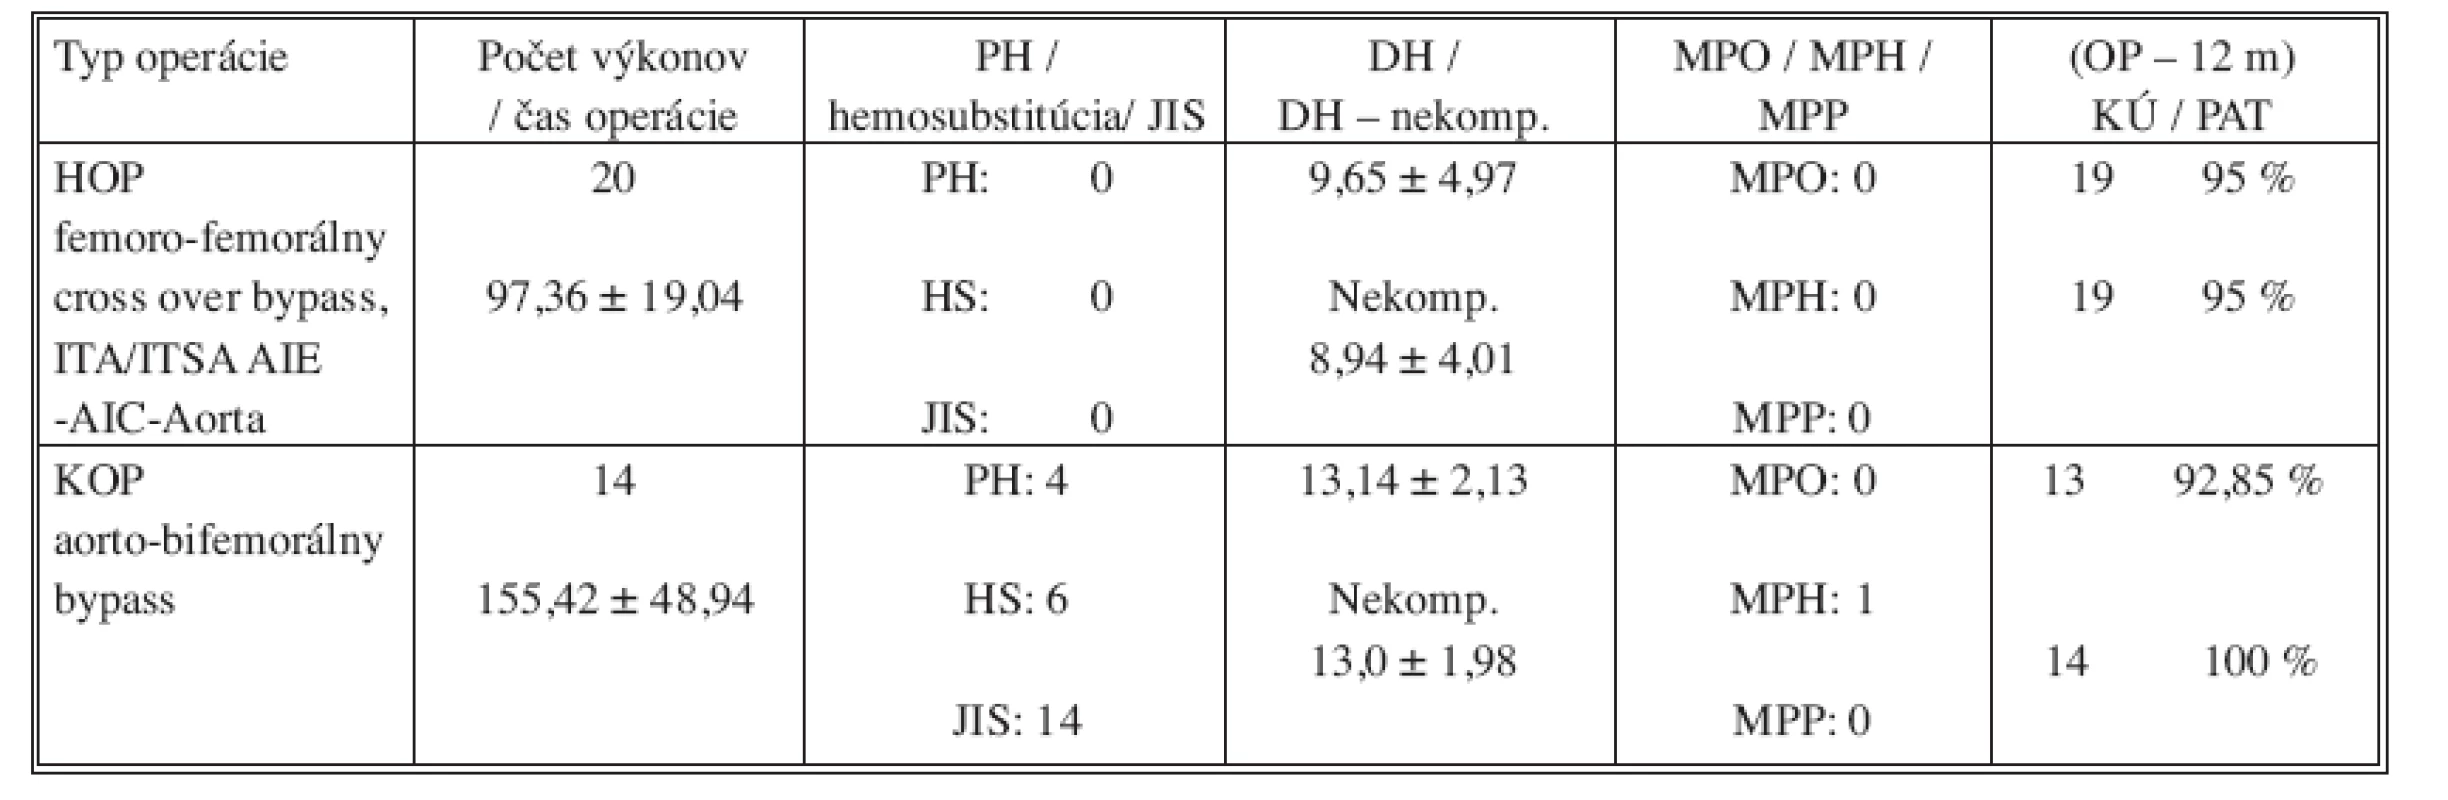 Porovnávacia tabuľka hybridného operačného postupu (HOP) v podobe femoro-femorálneho cross-over bypassu a ITA/ITSA proximálne s konvenčným operačným postupu (KOP) – aorto-bifemorálnym bypassom 
Tab. 1. Comparison table of the hybrid surgical procedures (HOP), i.e. femoro-femoral cross-over bypass and ITA/ITSA proximally, compared with the conventional procedure (KOP) – i.e. aorto-bifemoral bypass